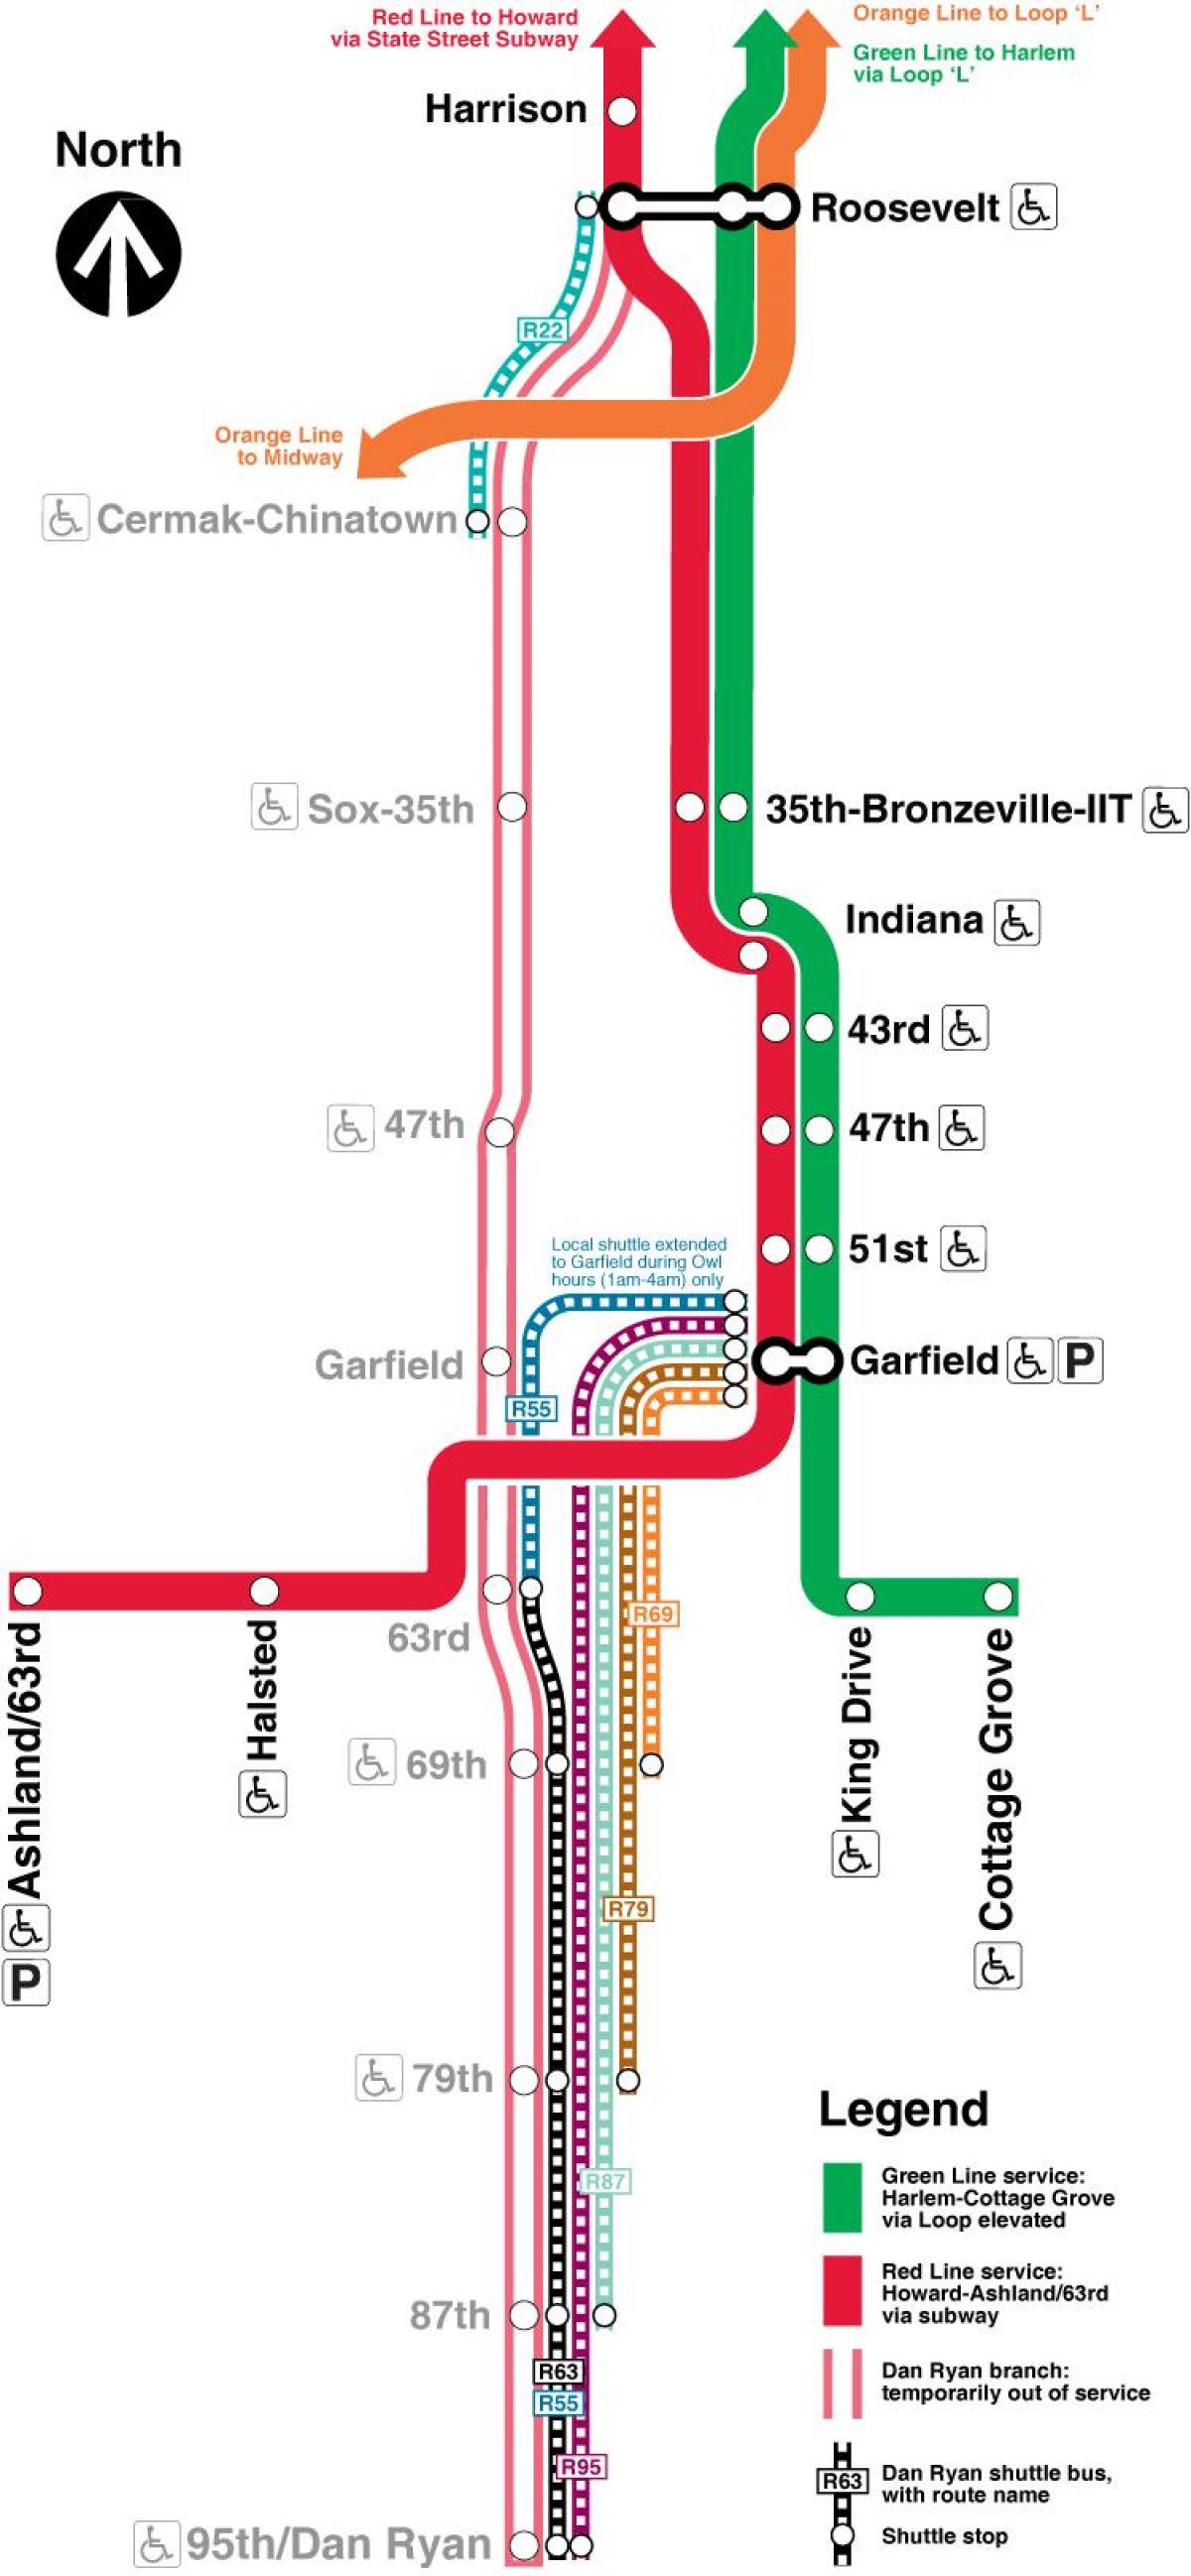 Chicago cta linea rossa sulla mappa